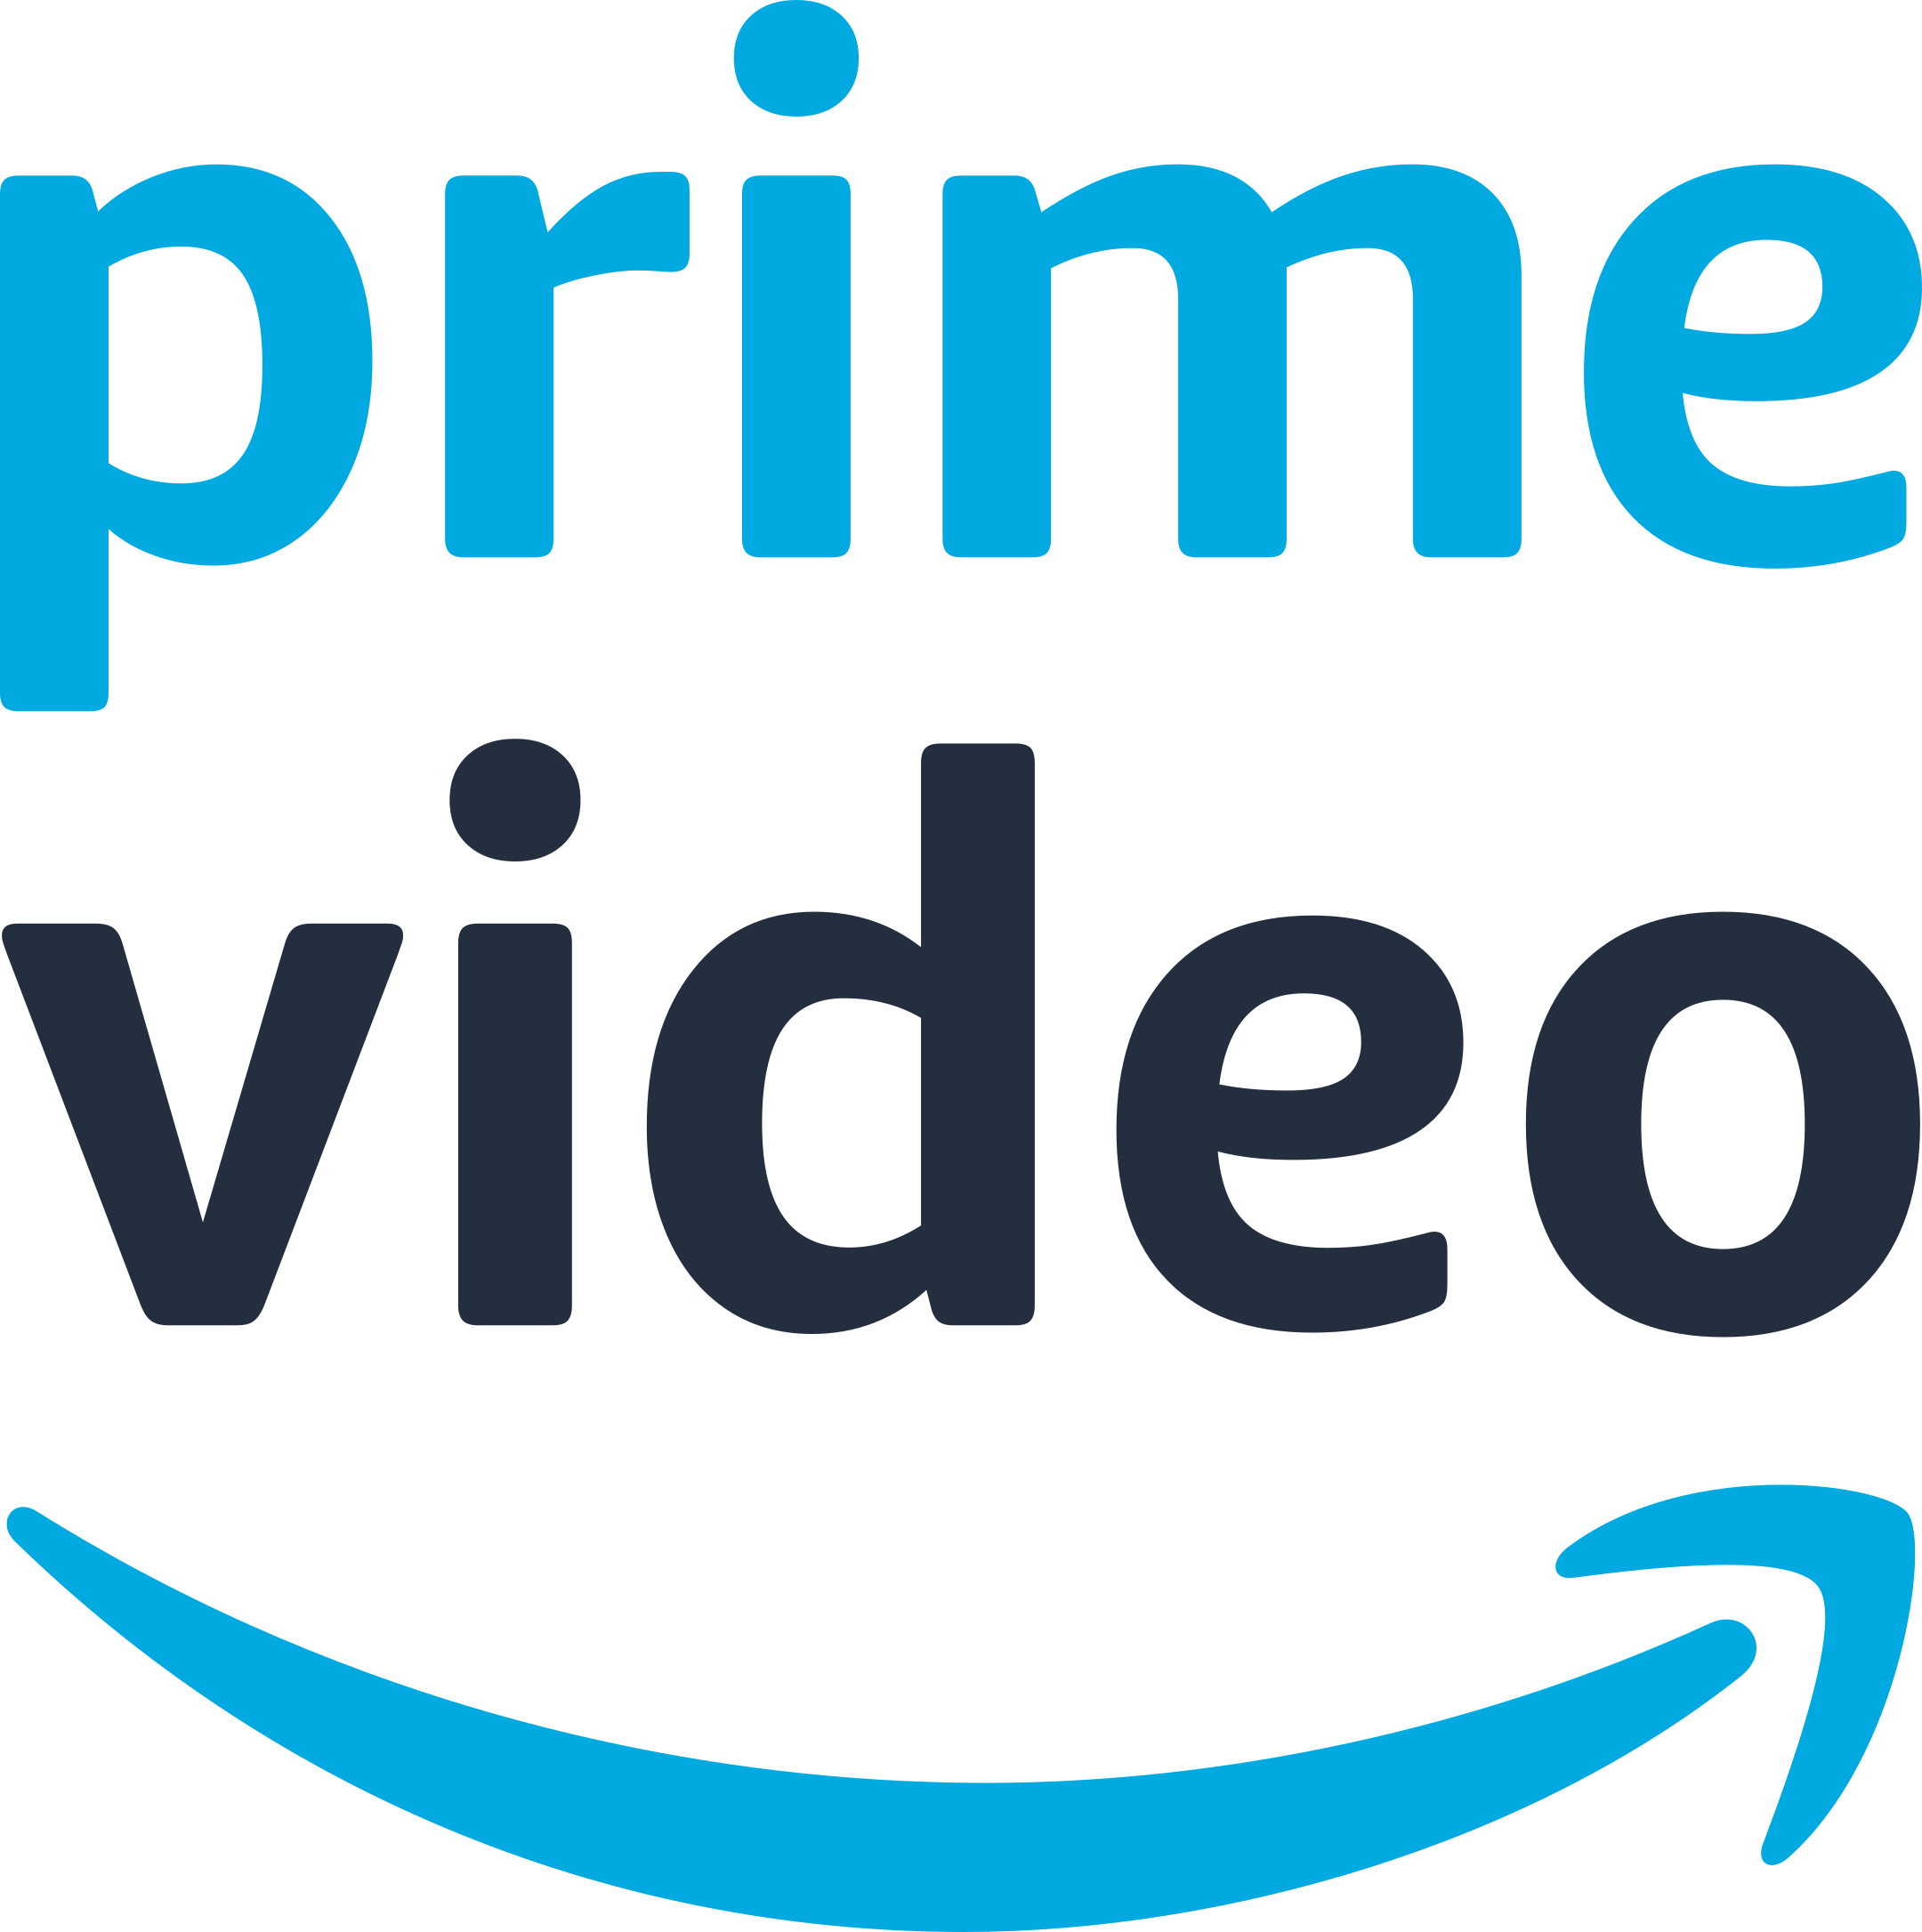 prime video logo 1 - Prime Video Logo